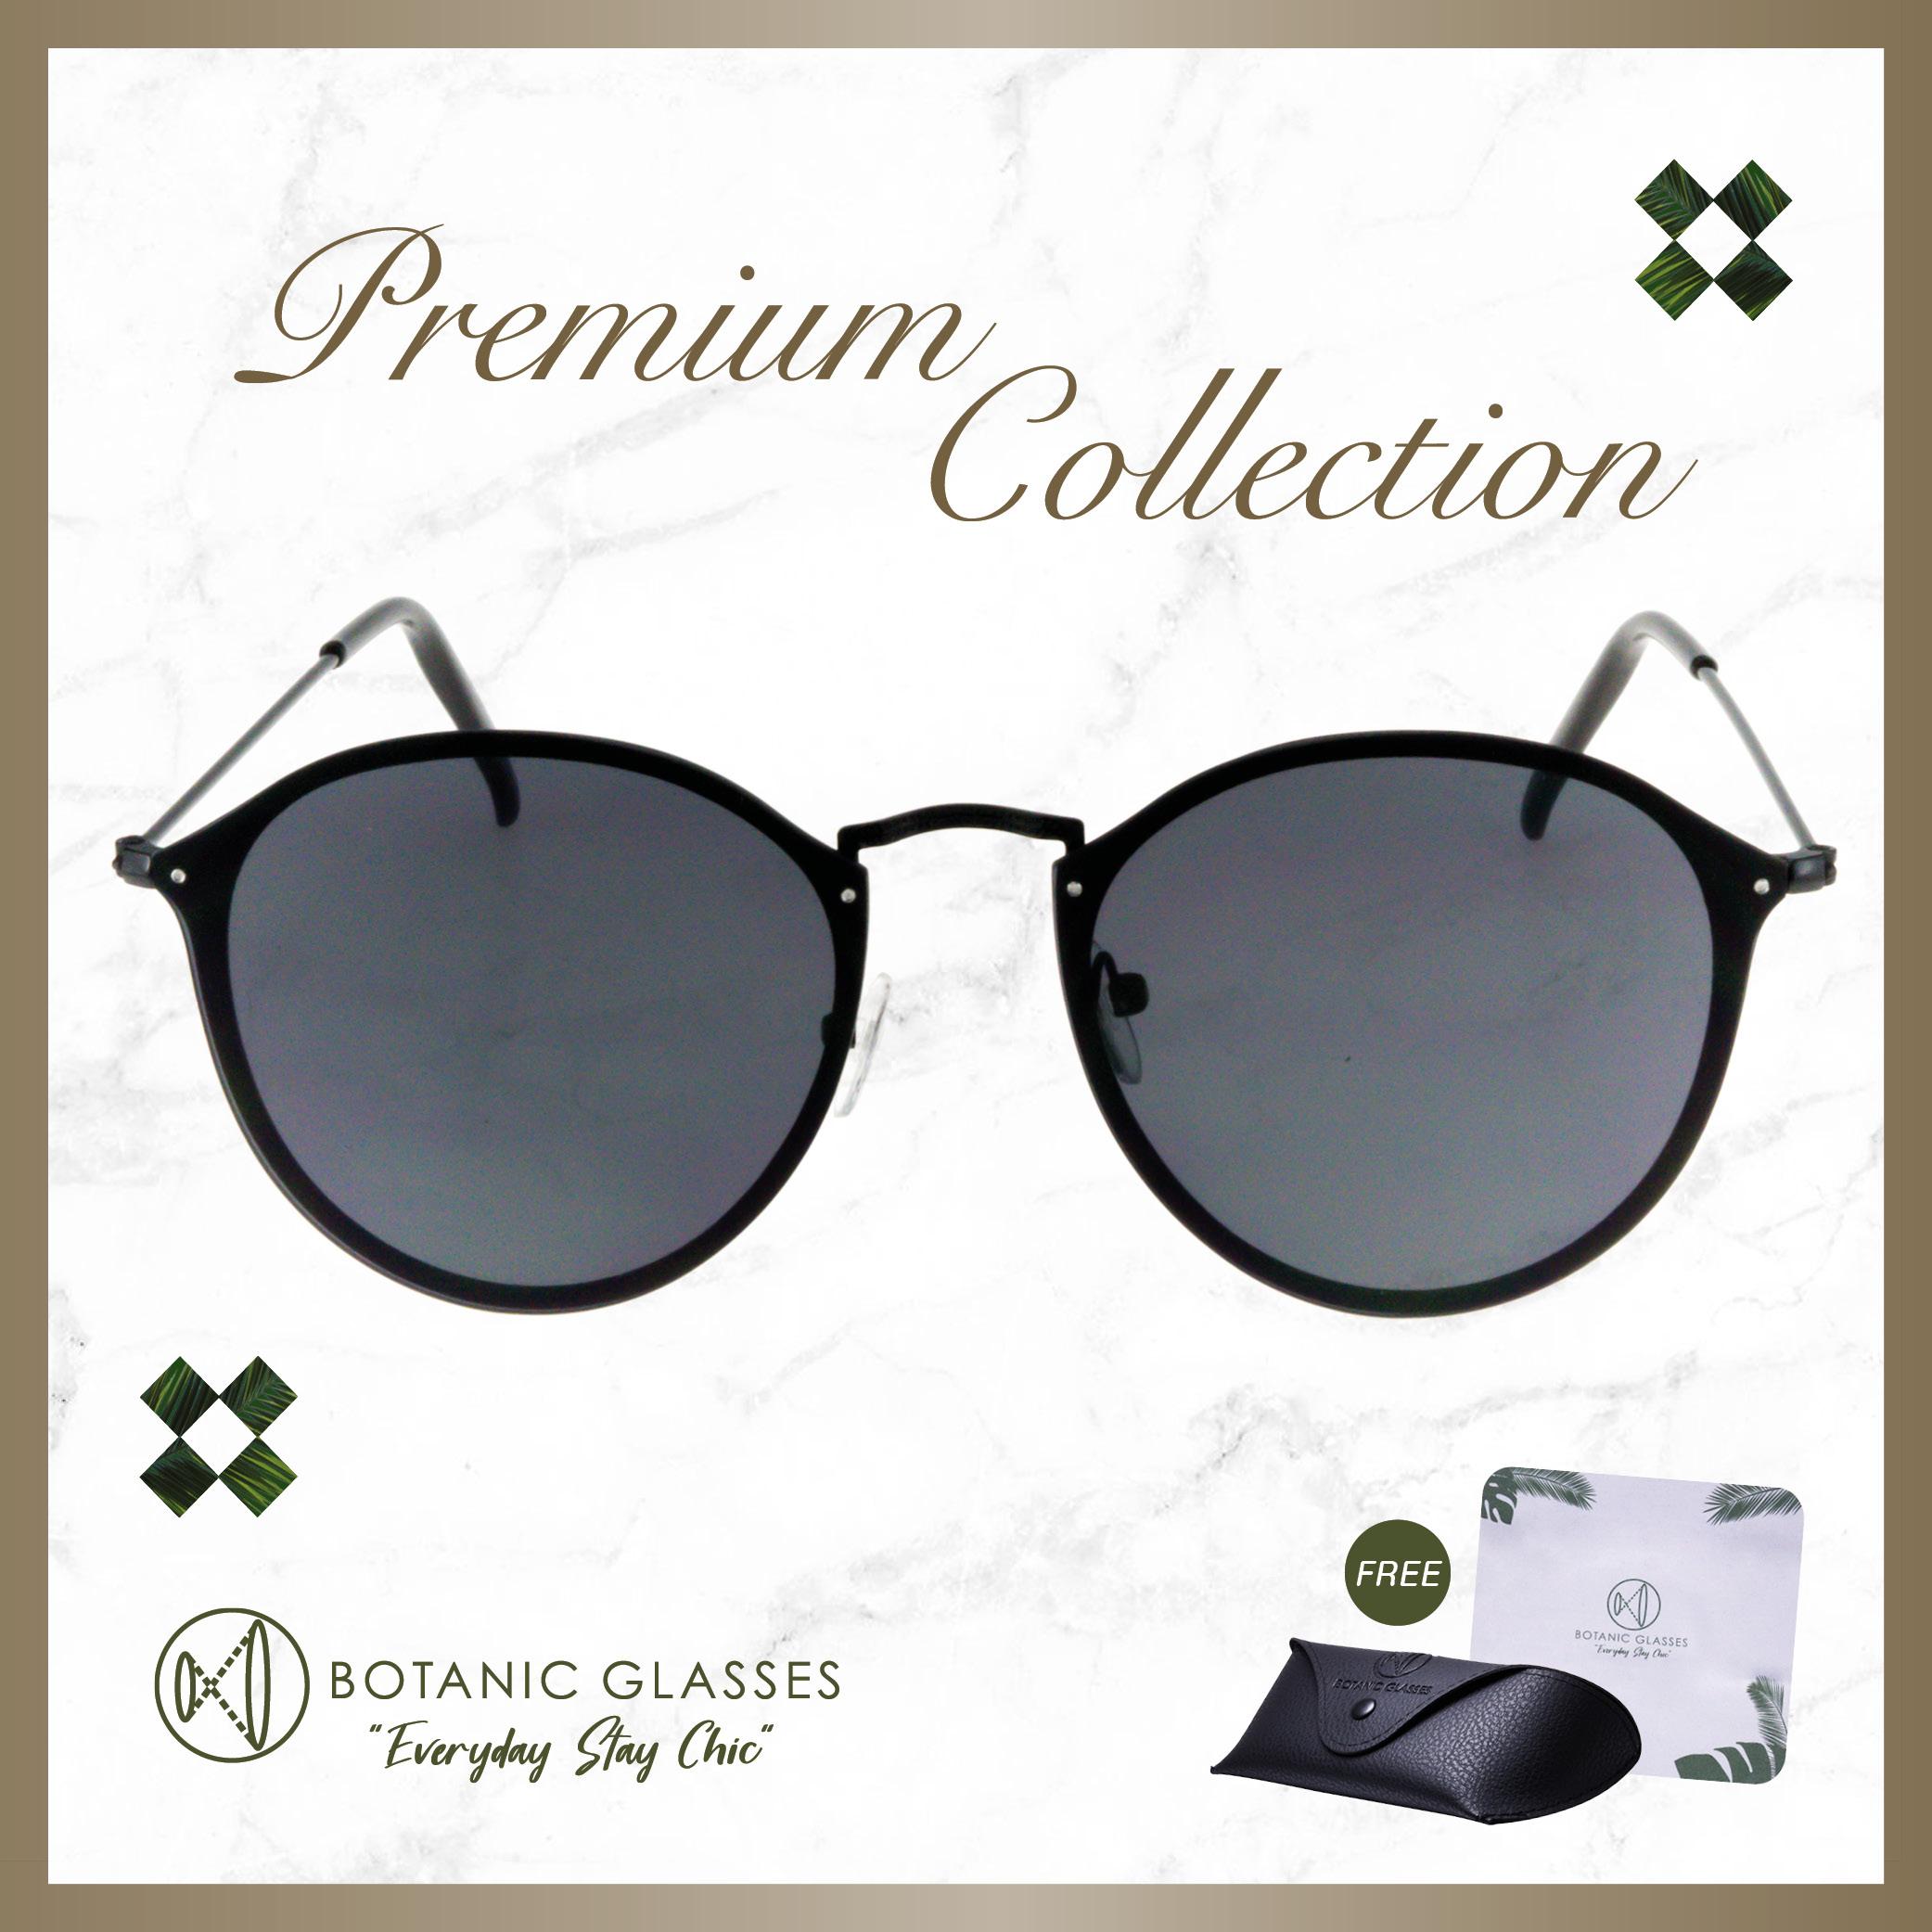 แว่นกันแดด Premium Collection แบรนด์ Botanic Glasses 07 Sunglasses